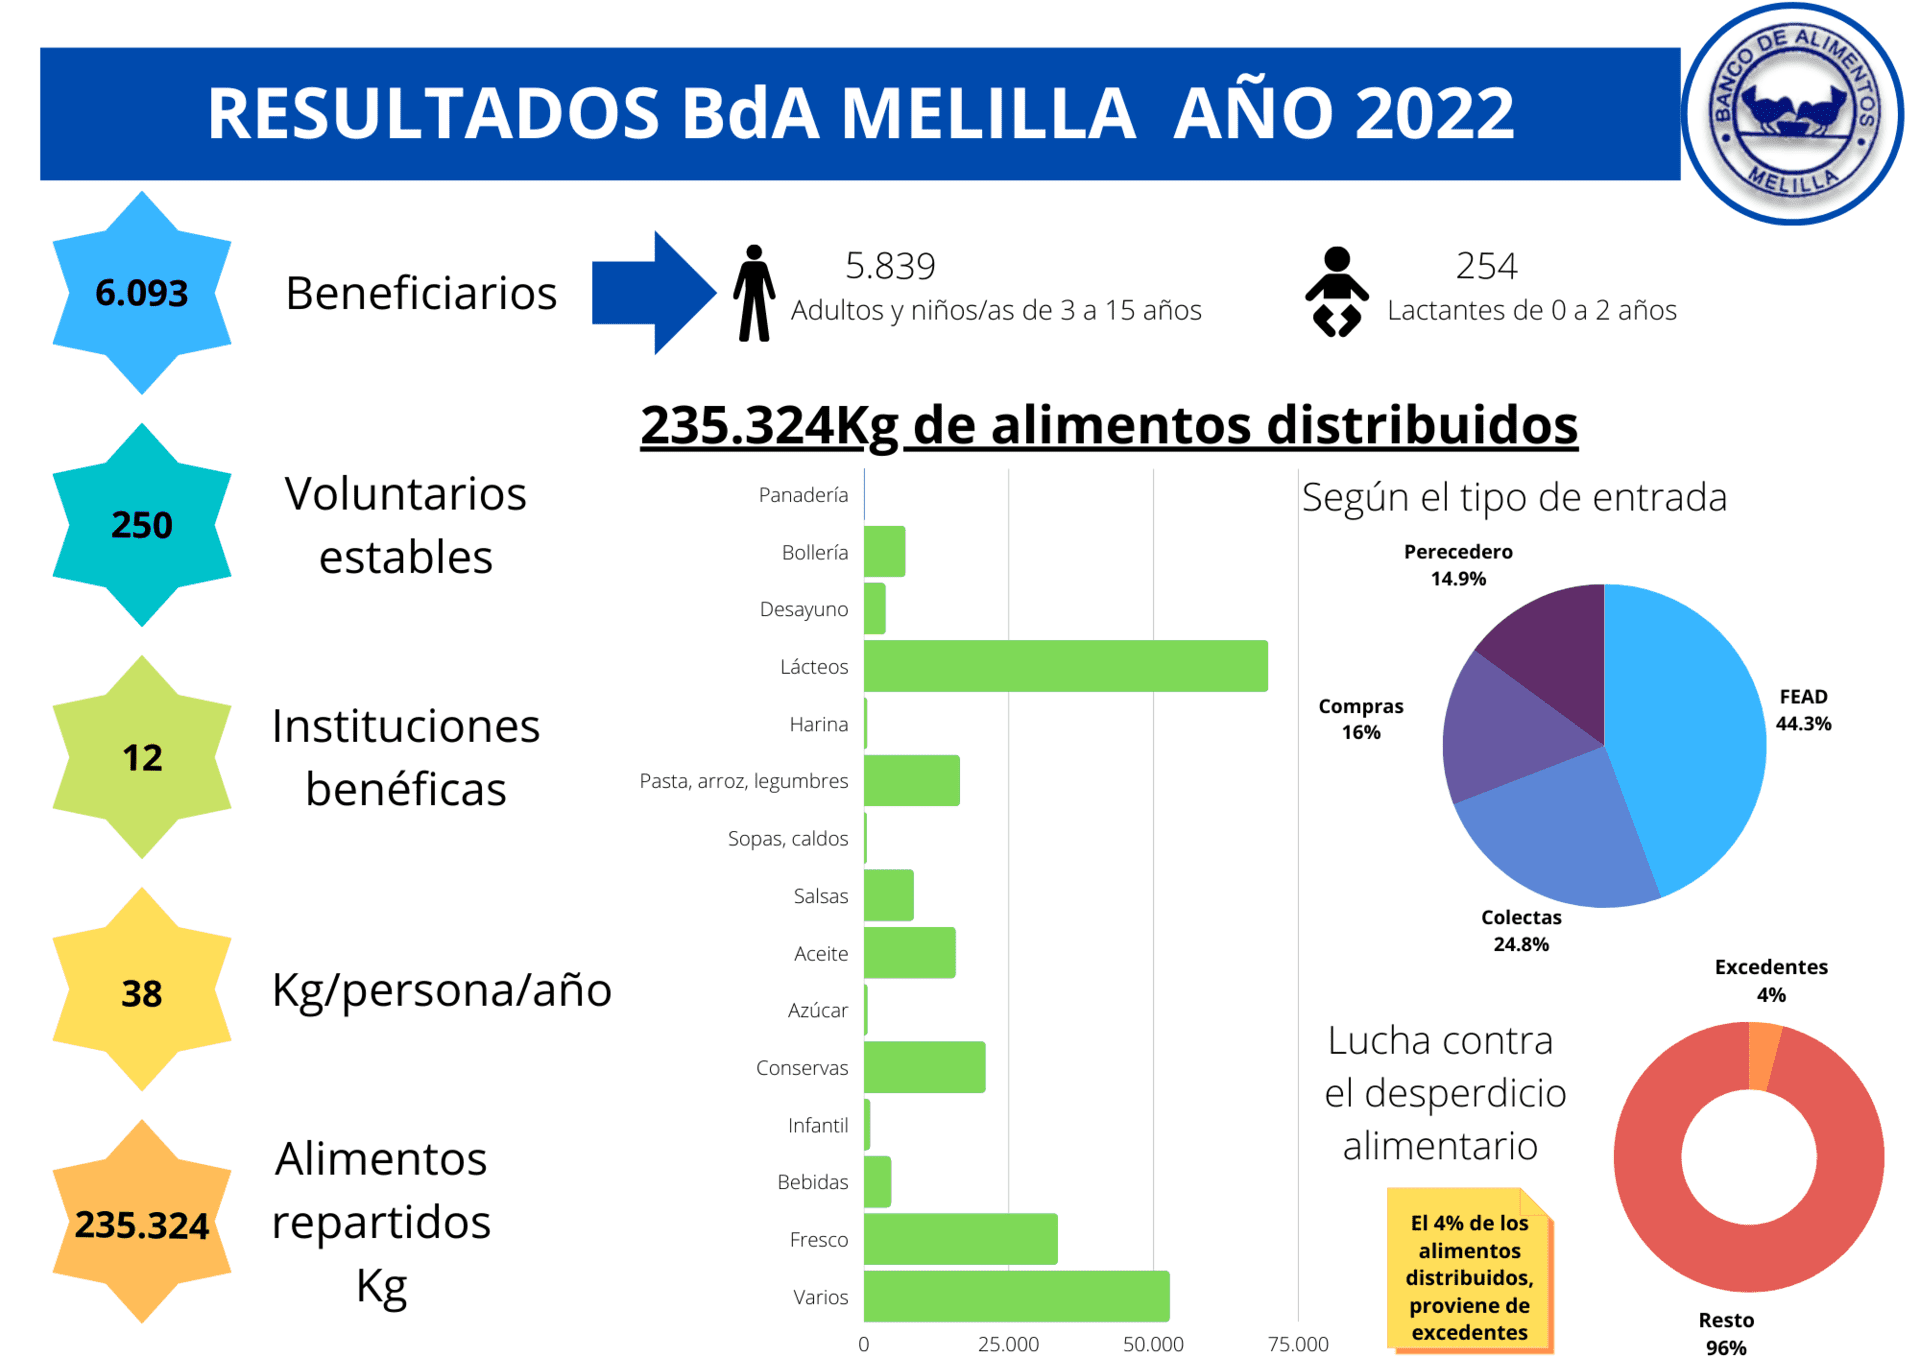 RESULTADOS BdA MELILLA AÑO 2022